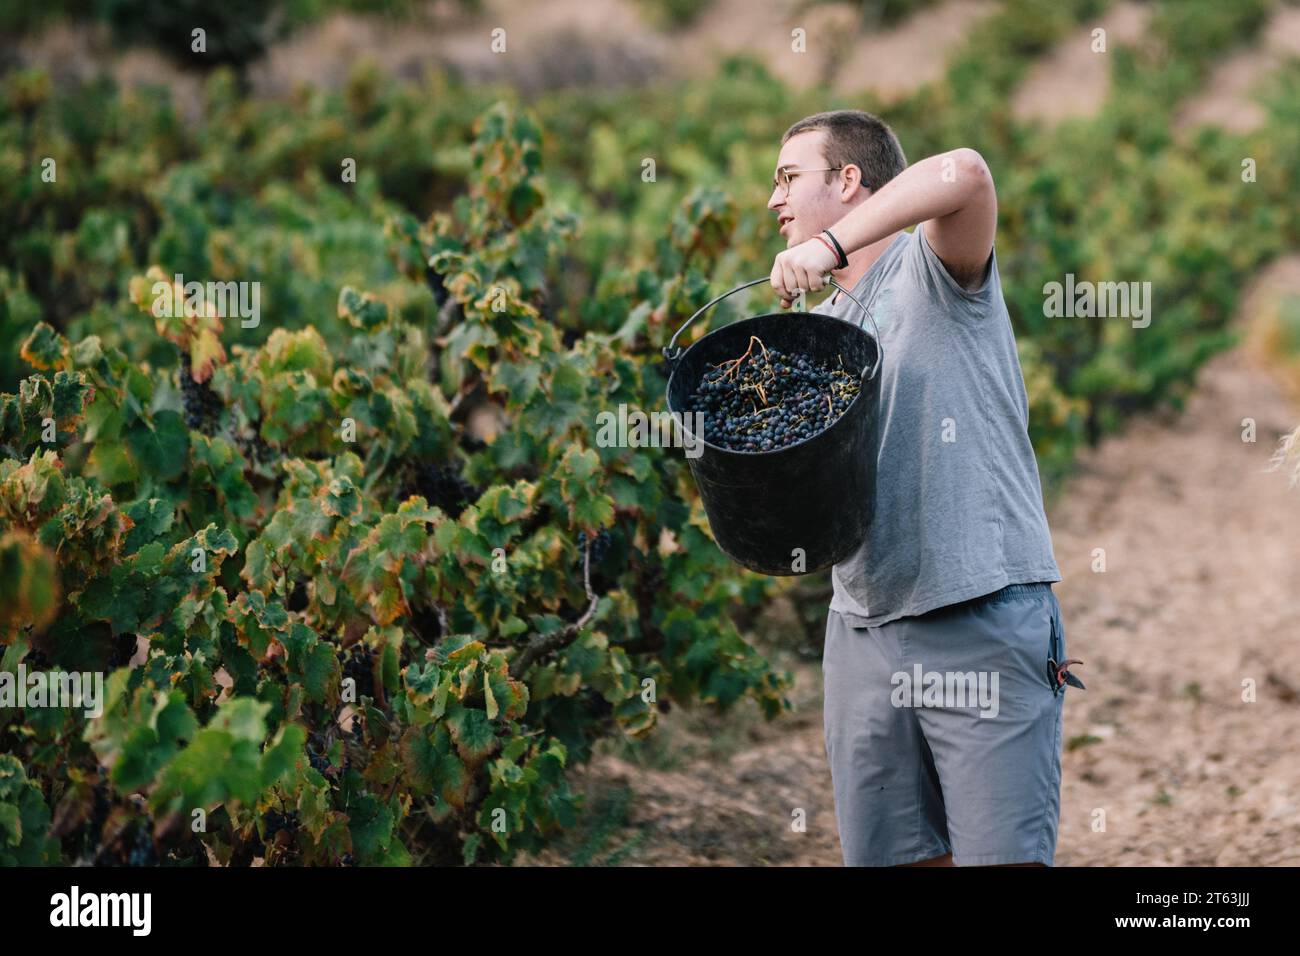 Männlicher Landwirt in lässiger Kleidung und Brille, der einen Eimer mit Trauben hält, während er Früchte in Weinbauplantagen erntet Stockfoto